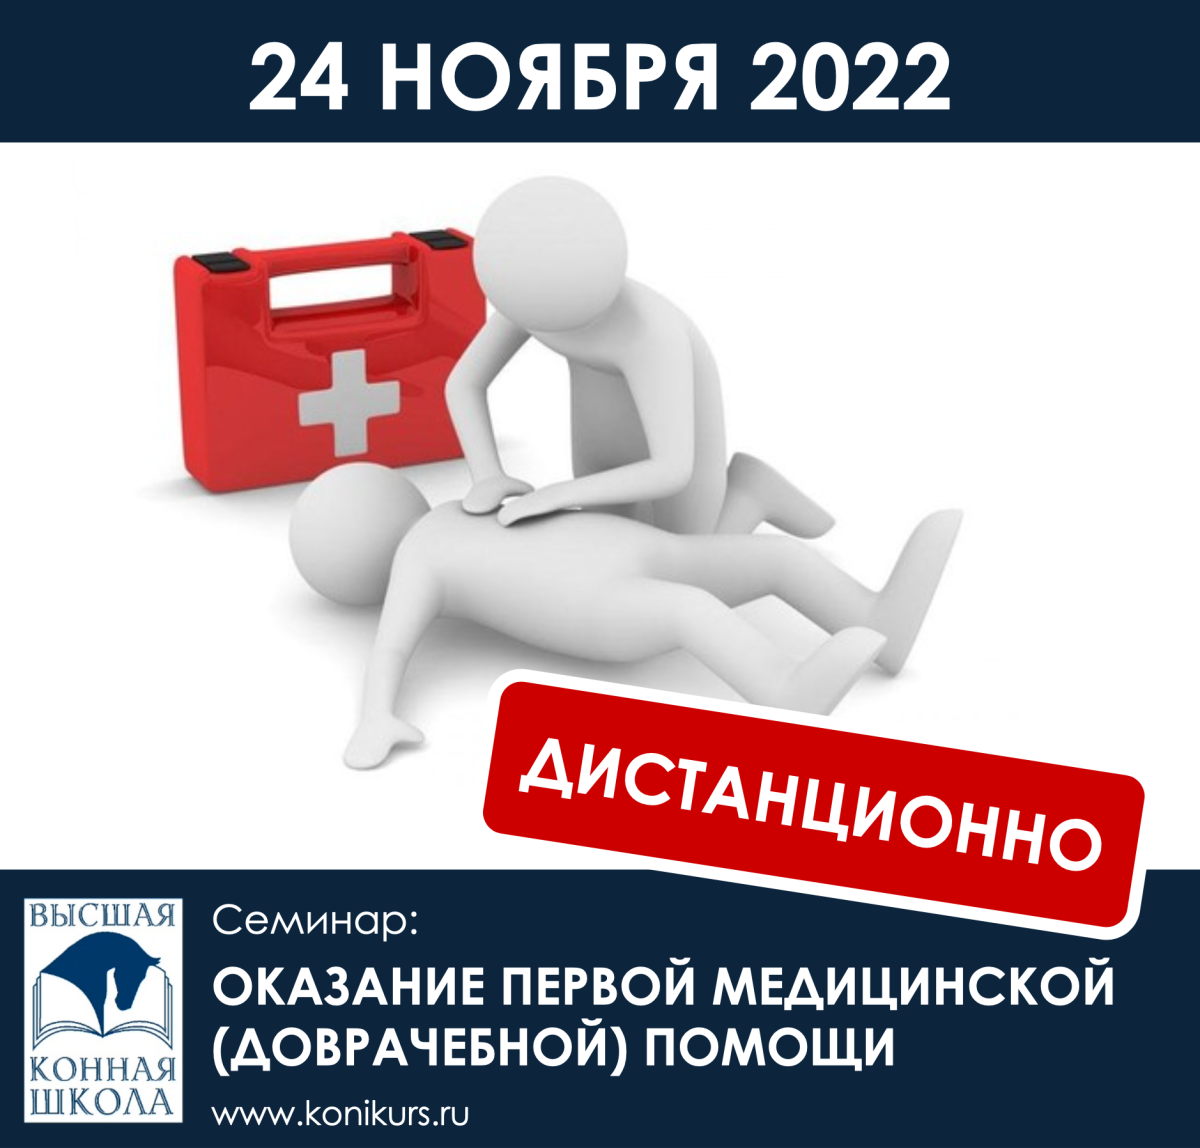 Приглашаем 24 ноября 2022 г. на семинар "Оказание первой медицинской (доврачебной) помощи"!